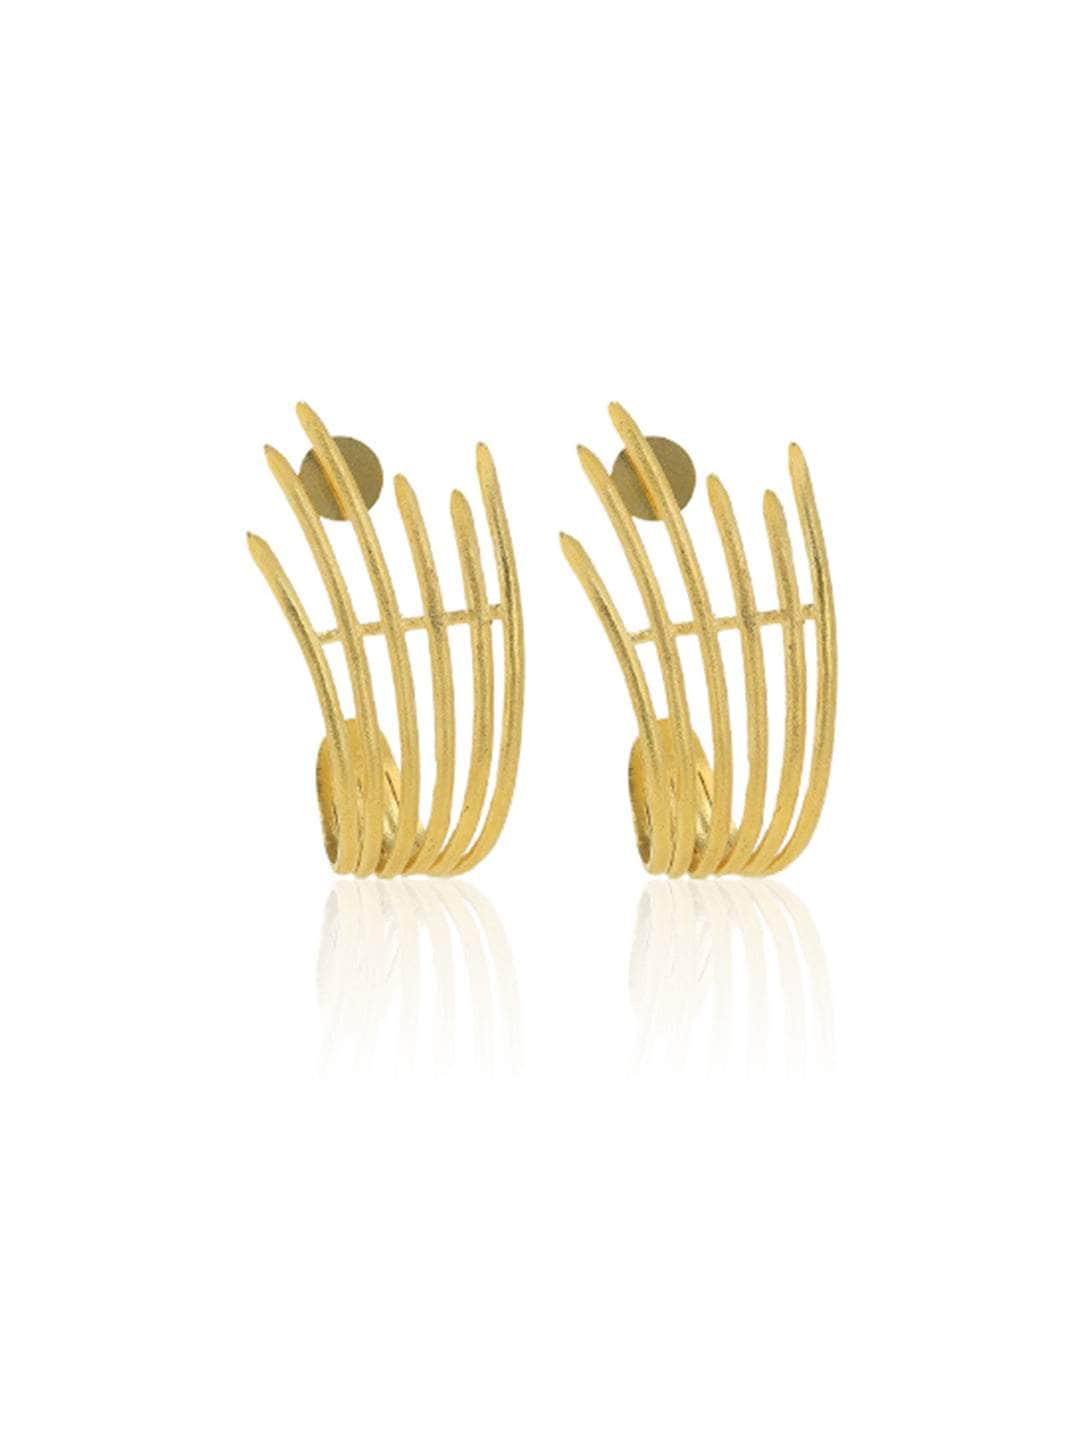 Ishhaara Golden Flame Stud Earring